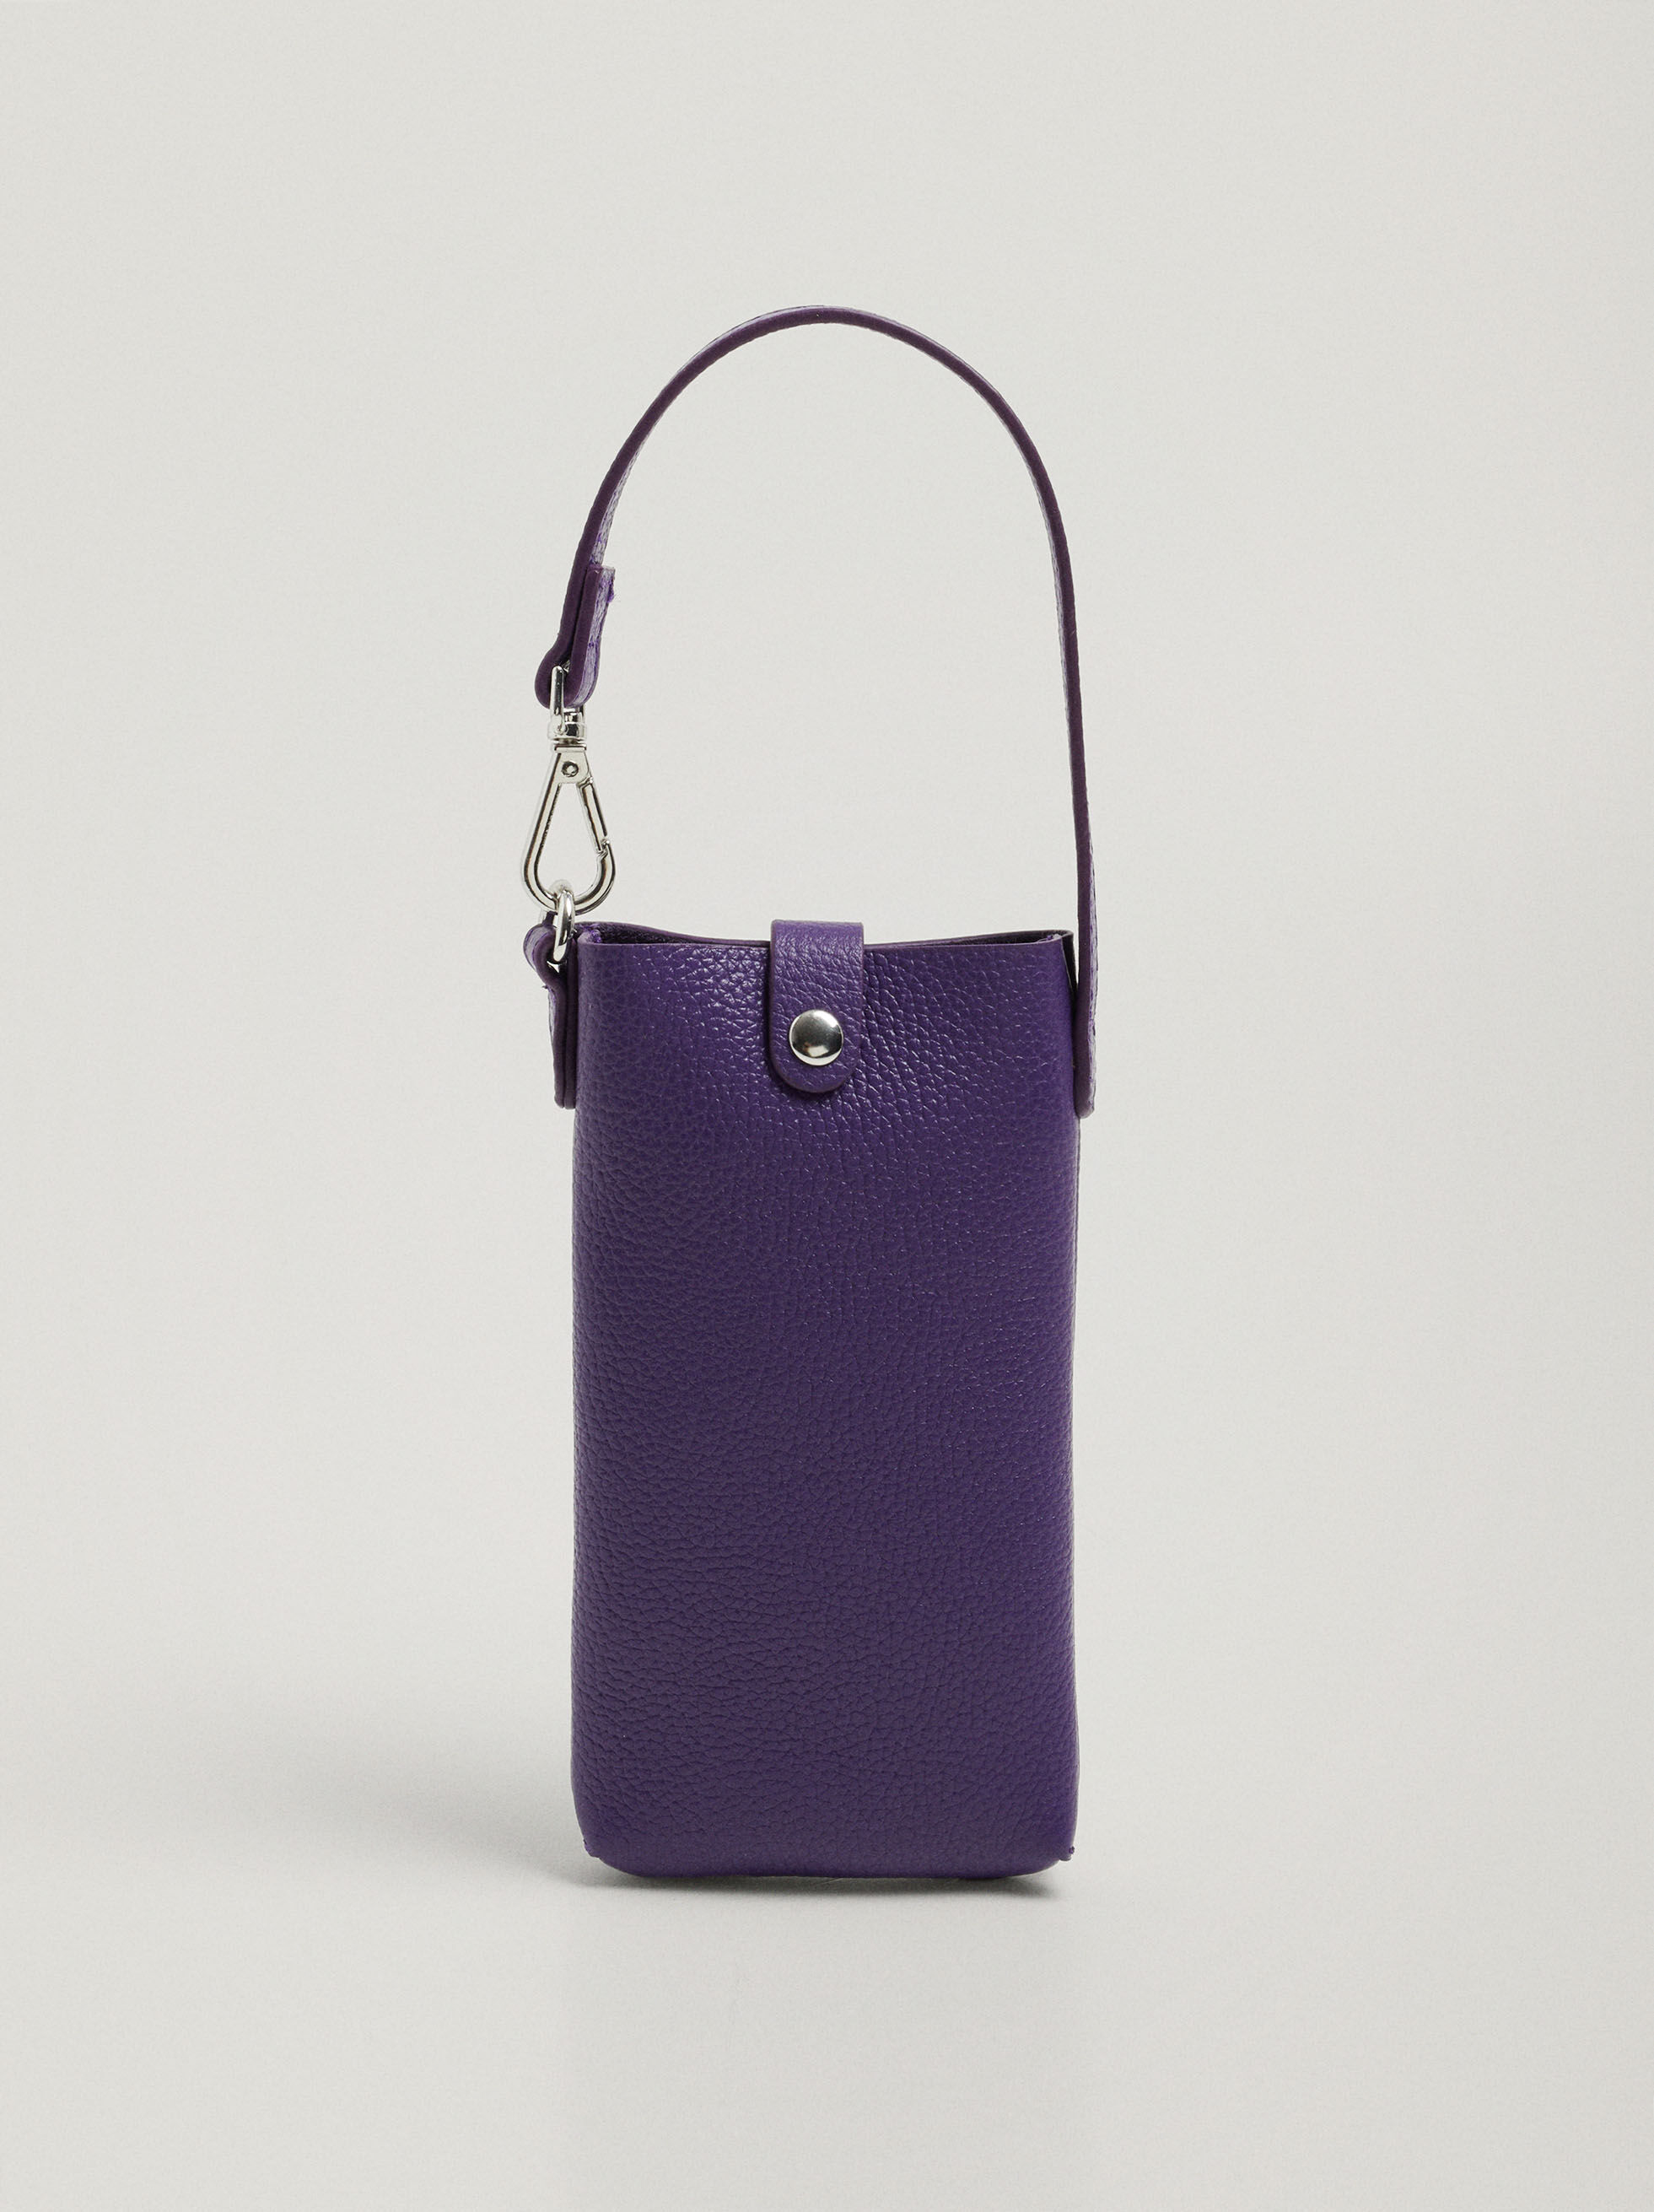 discount 52% WOMEN FASHION Bags Leatherette Parfois Handbag Golden/Purple Single 